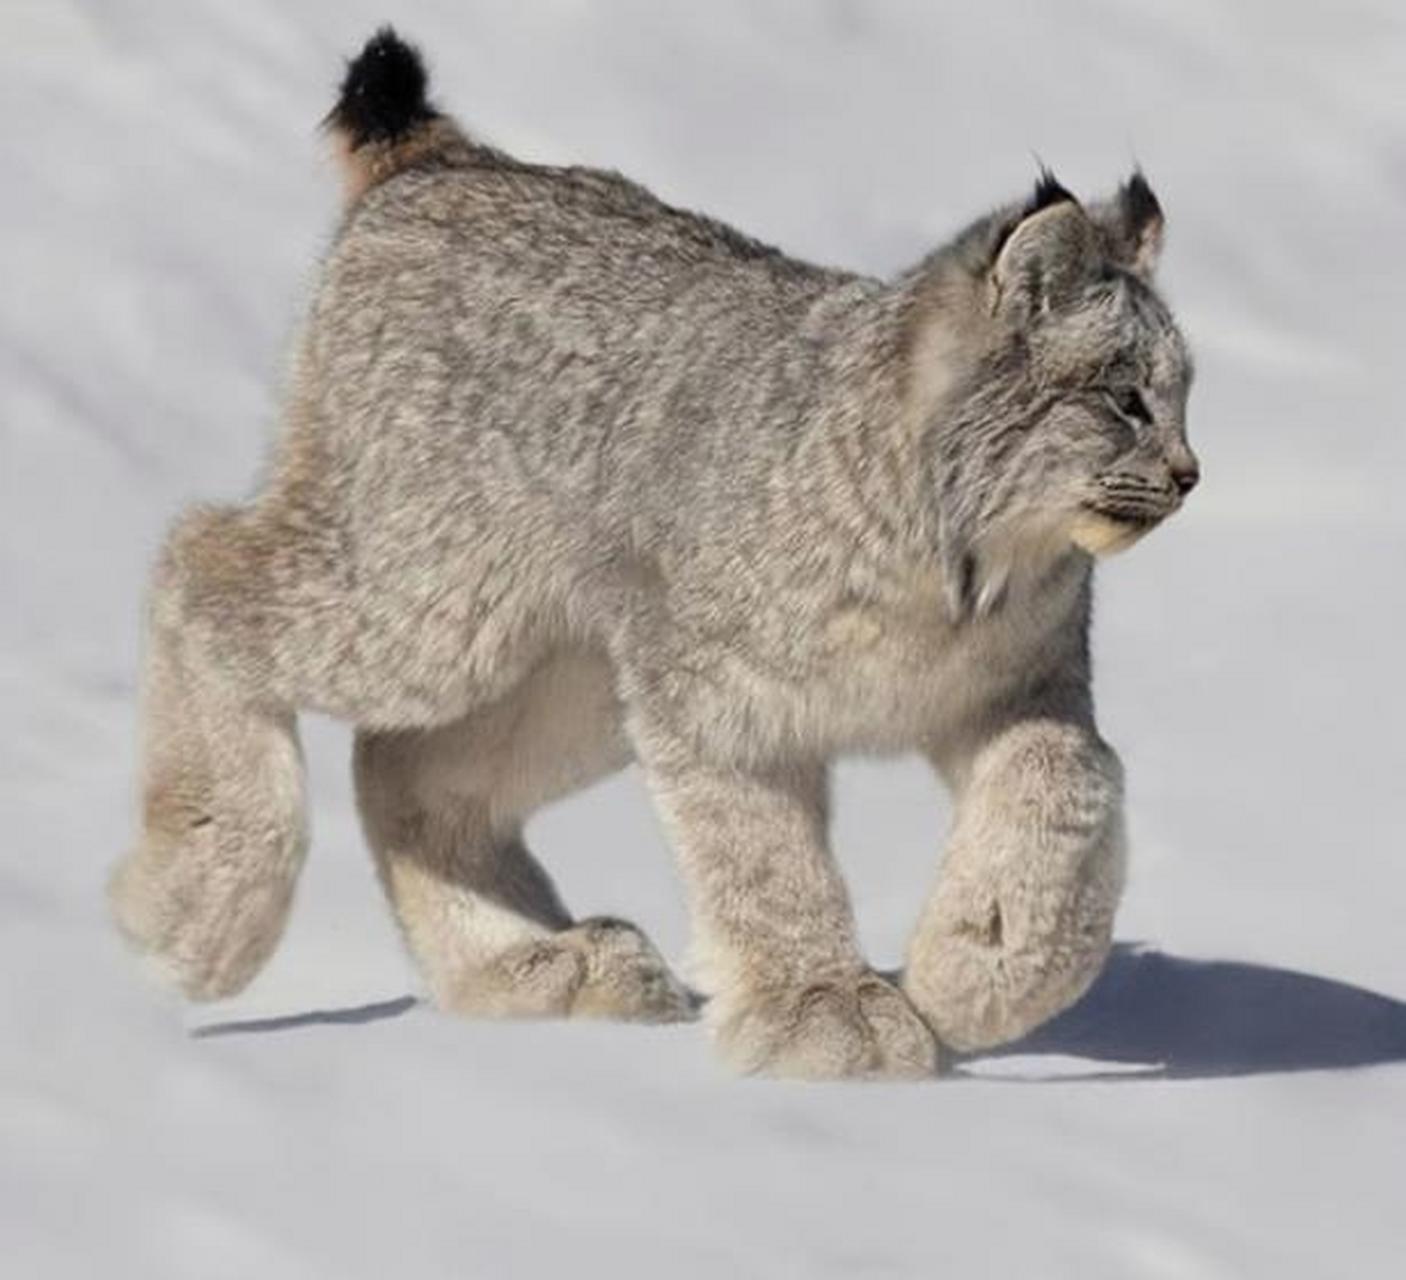 加拿大猞猁宽大的脚掌上覆盖着绒毛,如同雪地鞋,有助于它在雪地上行走